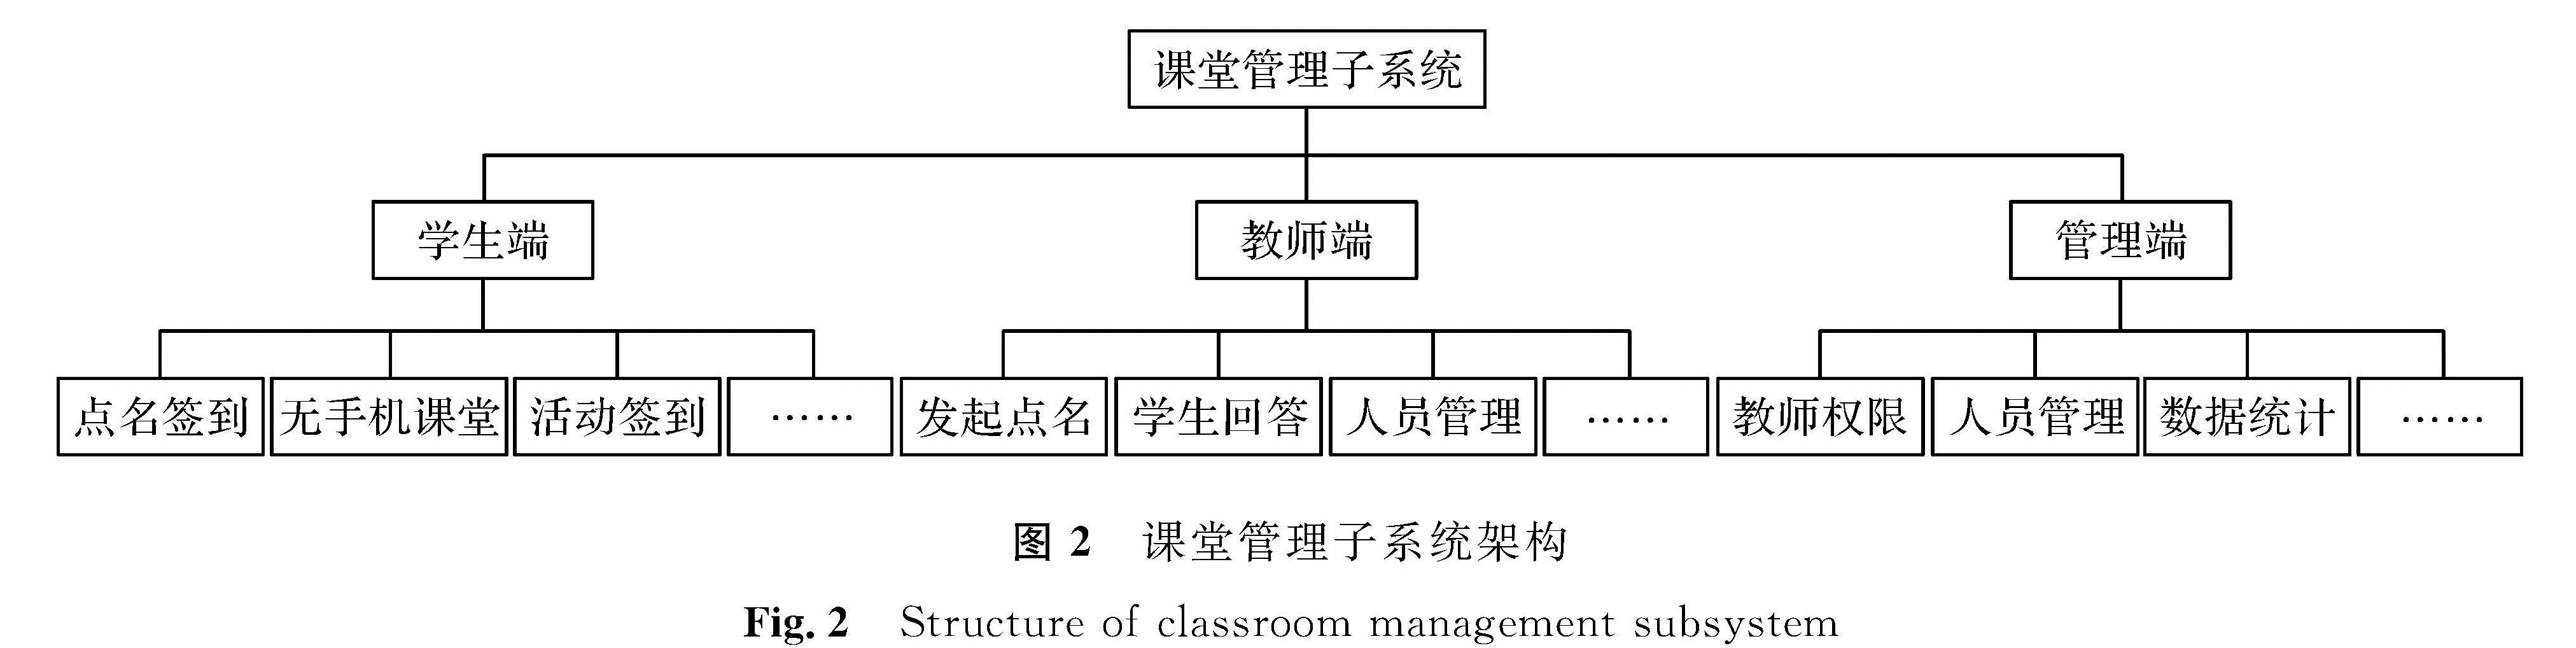 图2 课堂管理子系统架构<br/>Fig.2 Structure of classroom management subsystem